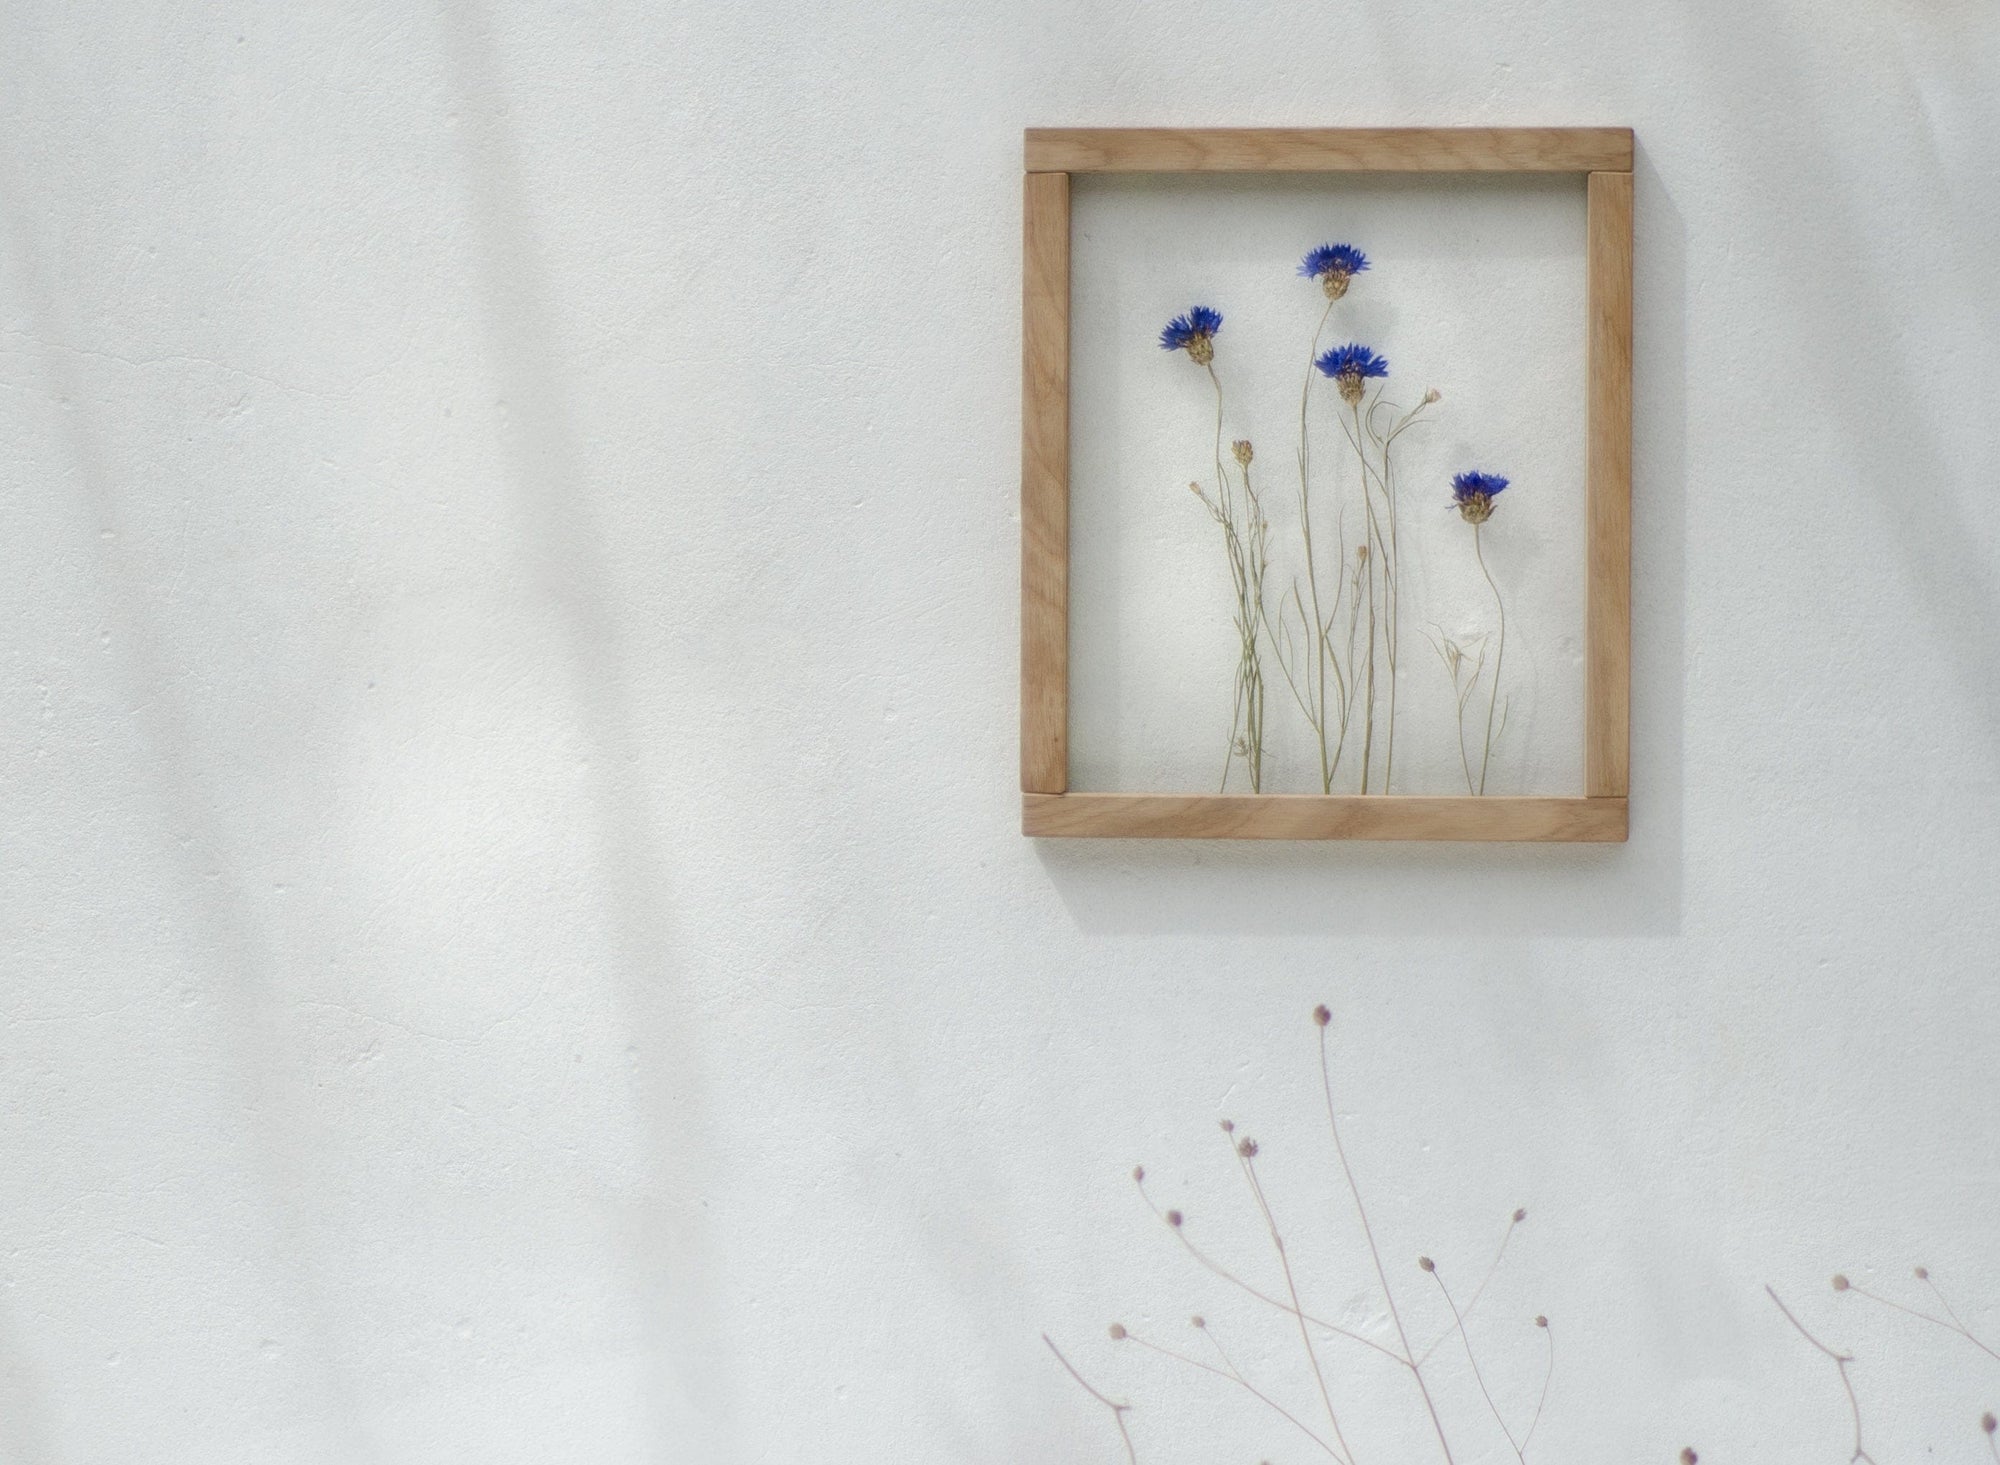 Fairycore decor Sunflower pressed flower art frame.Floating frame